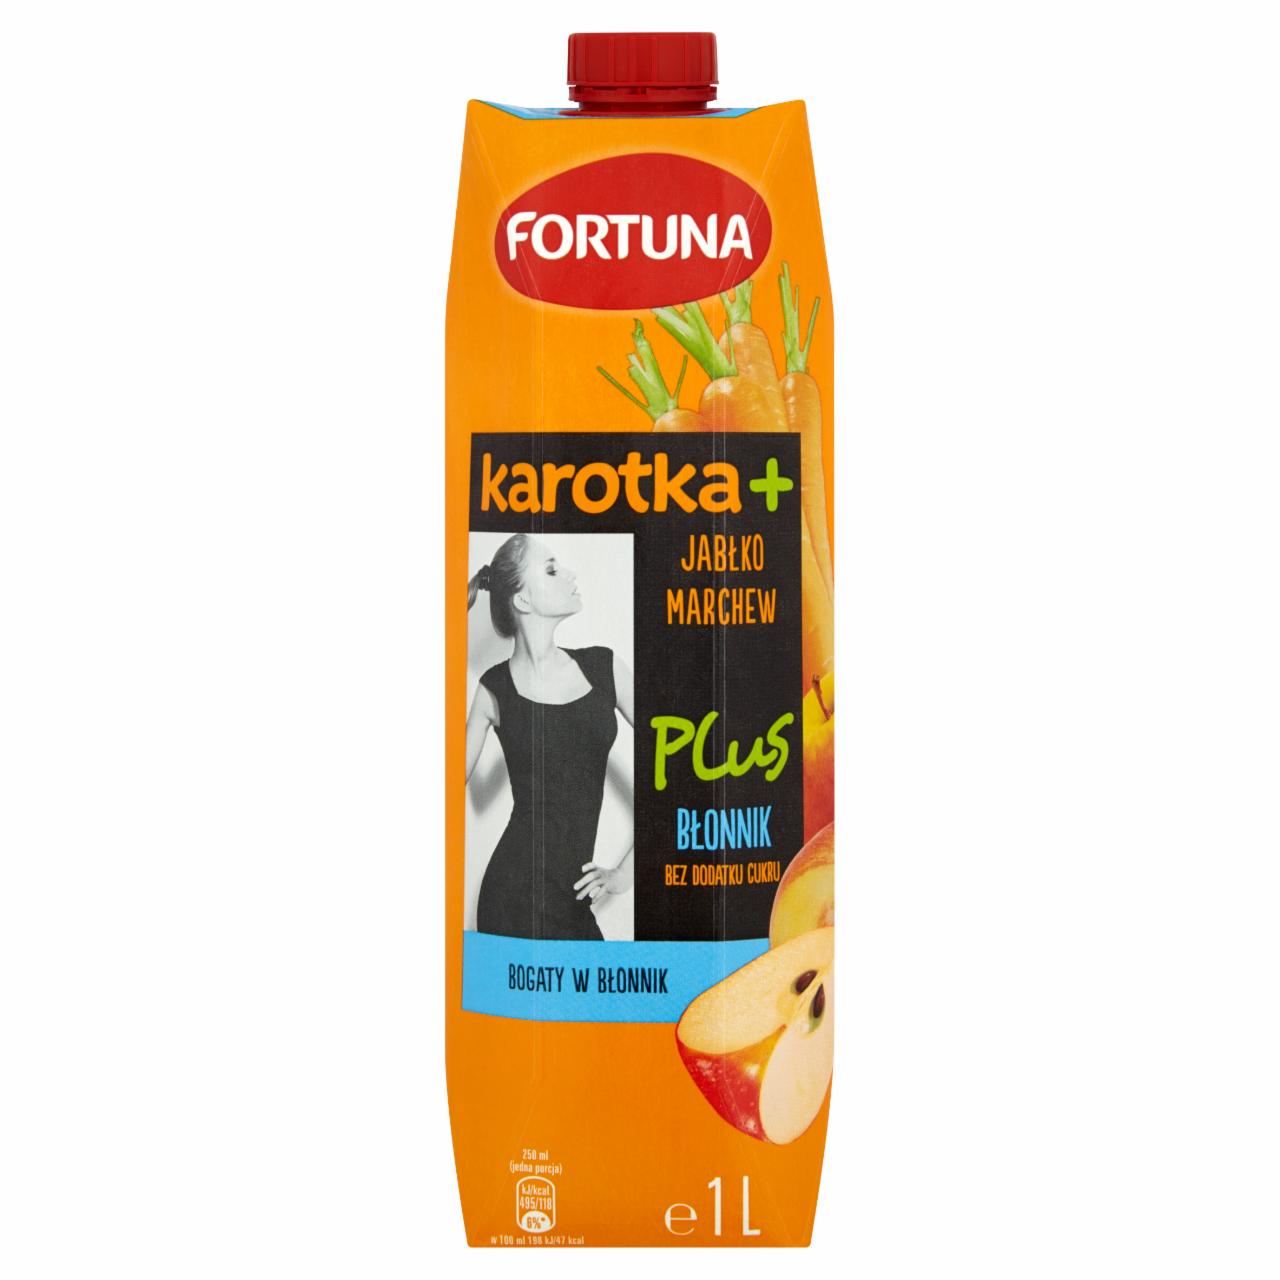 Zdjęcia - Fortuna Karotka+ Jabłko marchew + błonnik Sok 1 l